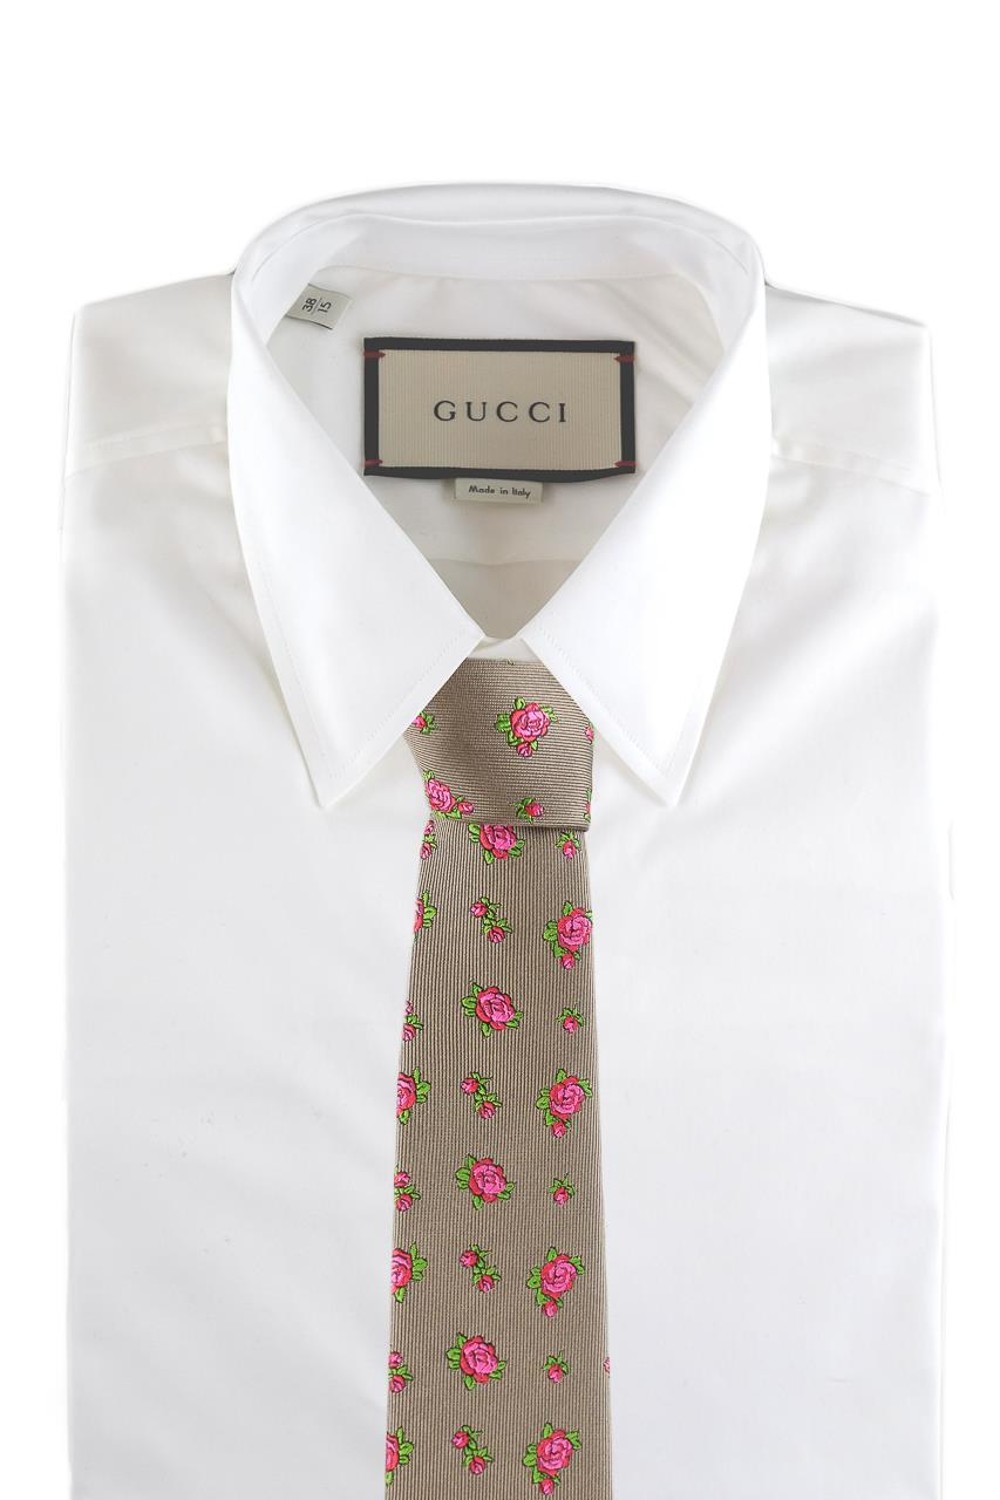 shop GUCCI Saldi Cravatta: Gucci cravatta in seta beige con motivo rose rosse.
Dettaglio Doppia G oro.
L 7cm x A 146cm.
Made in Italy.. 495325 4E002-2972 number 3713011